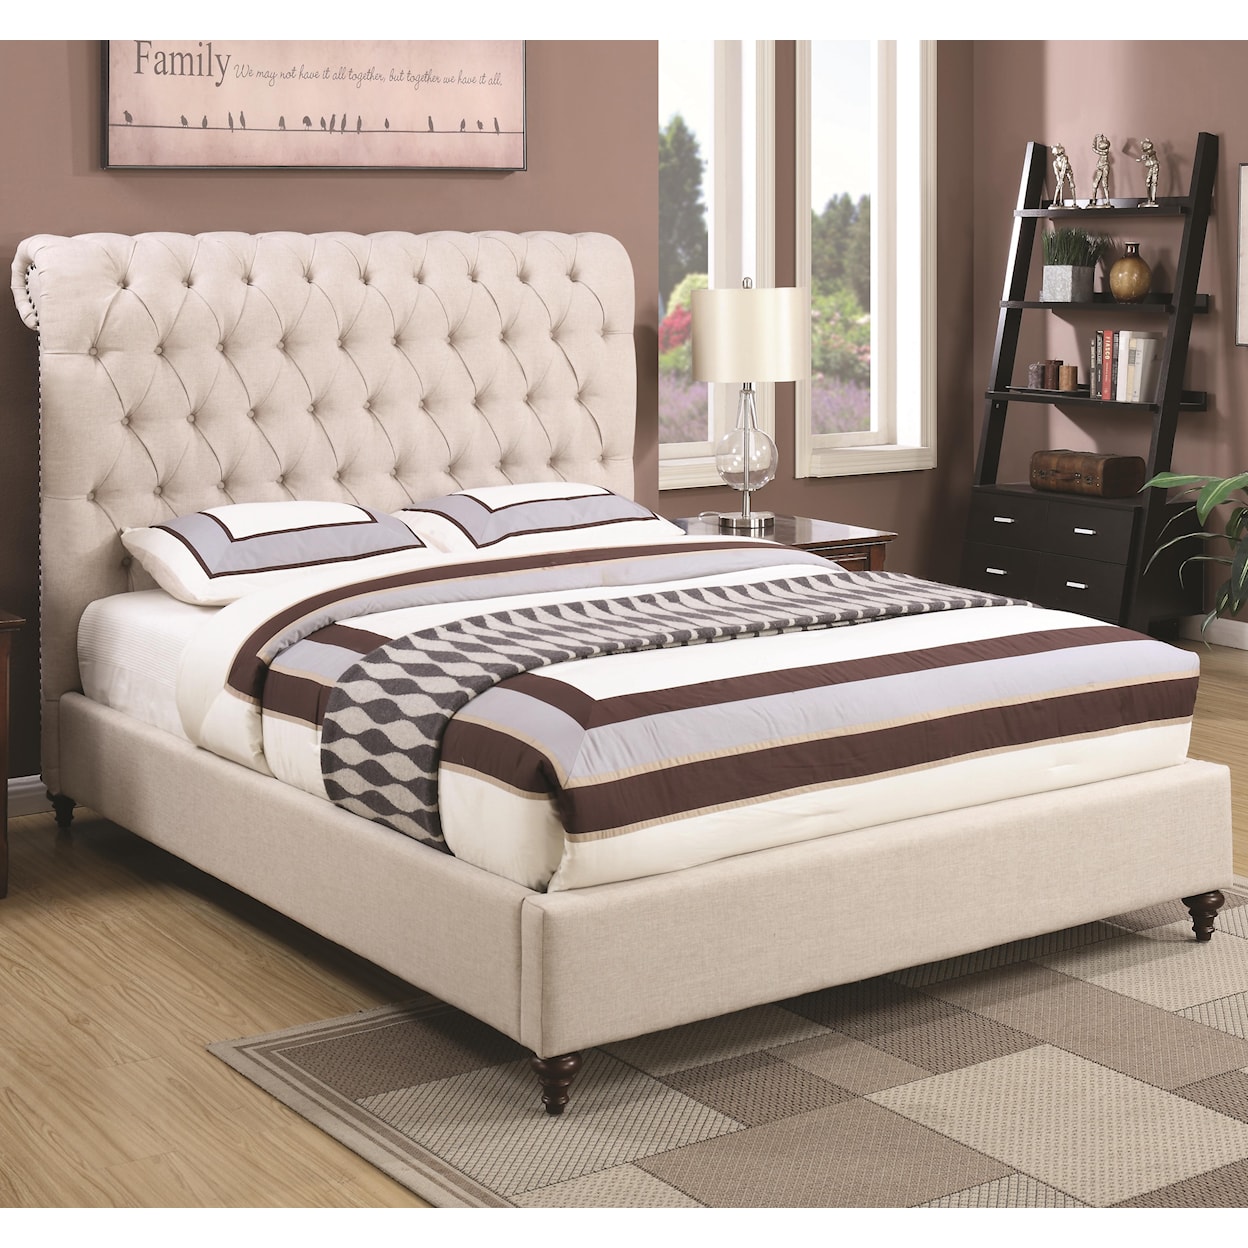 Coaster Devon King Upholstered Bed